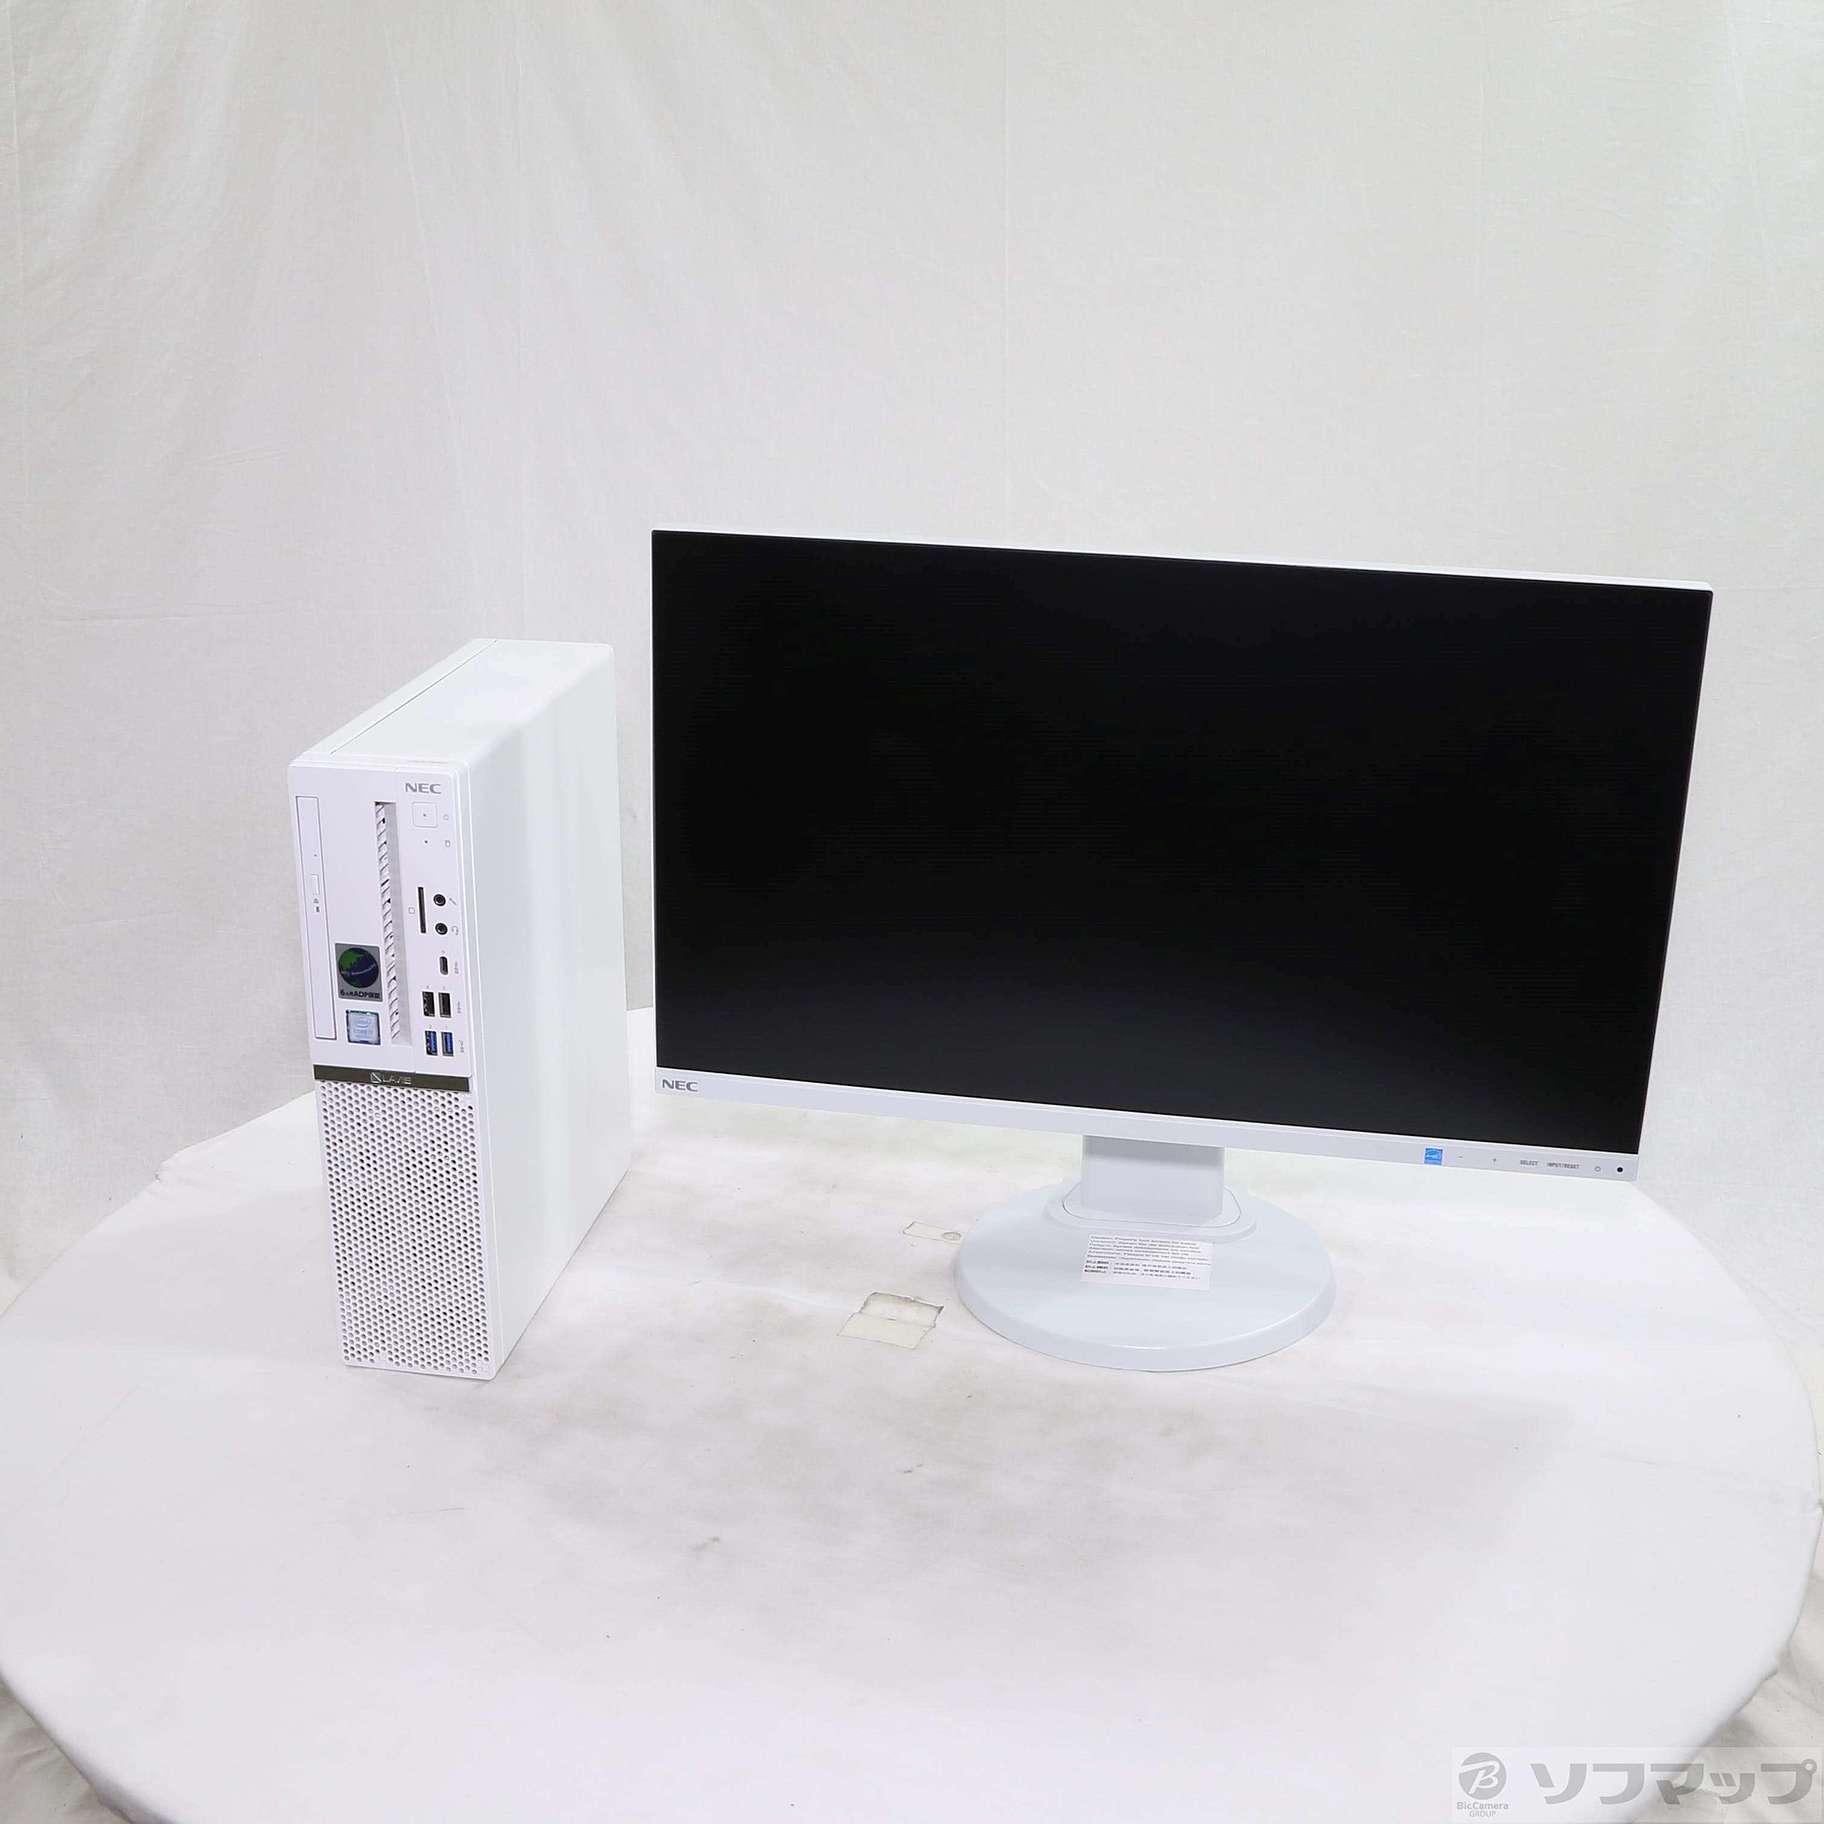 (中古)NEC LAVIE Direct DT PC-GD328ZZGE ホワイト (NEC Refreshed PC) (Windows 10) ≪メーカー保証あり≫(196-ud)